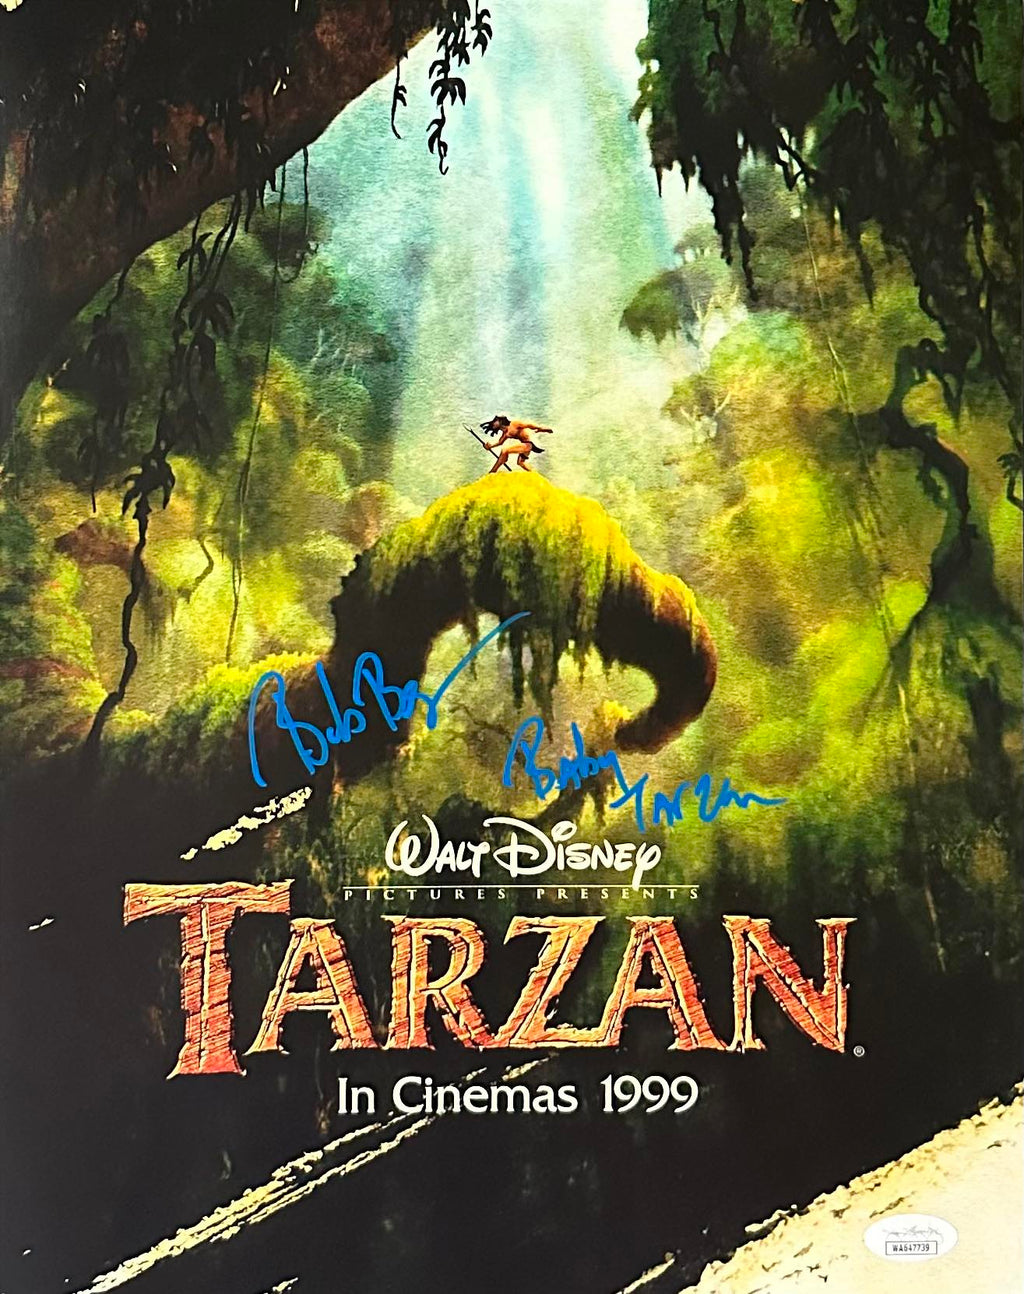 Bob Bergen autographed signed inscribed 11x14 photo Tarzan JSA Baby Tarzan